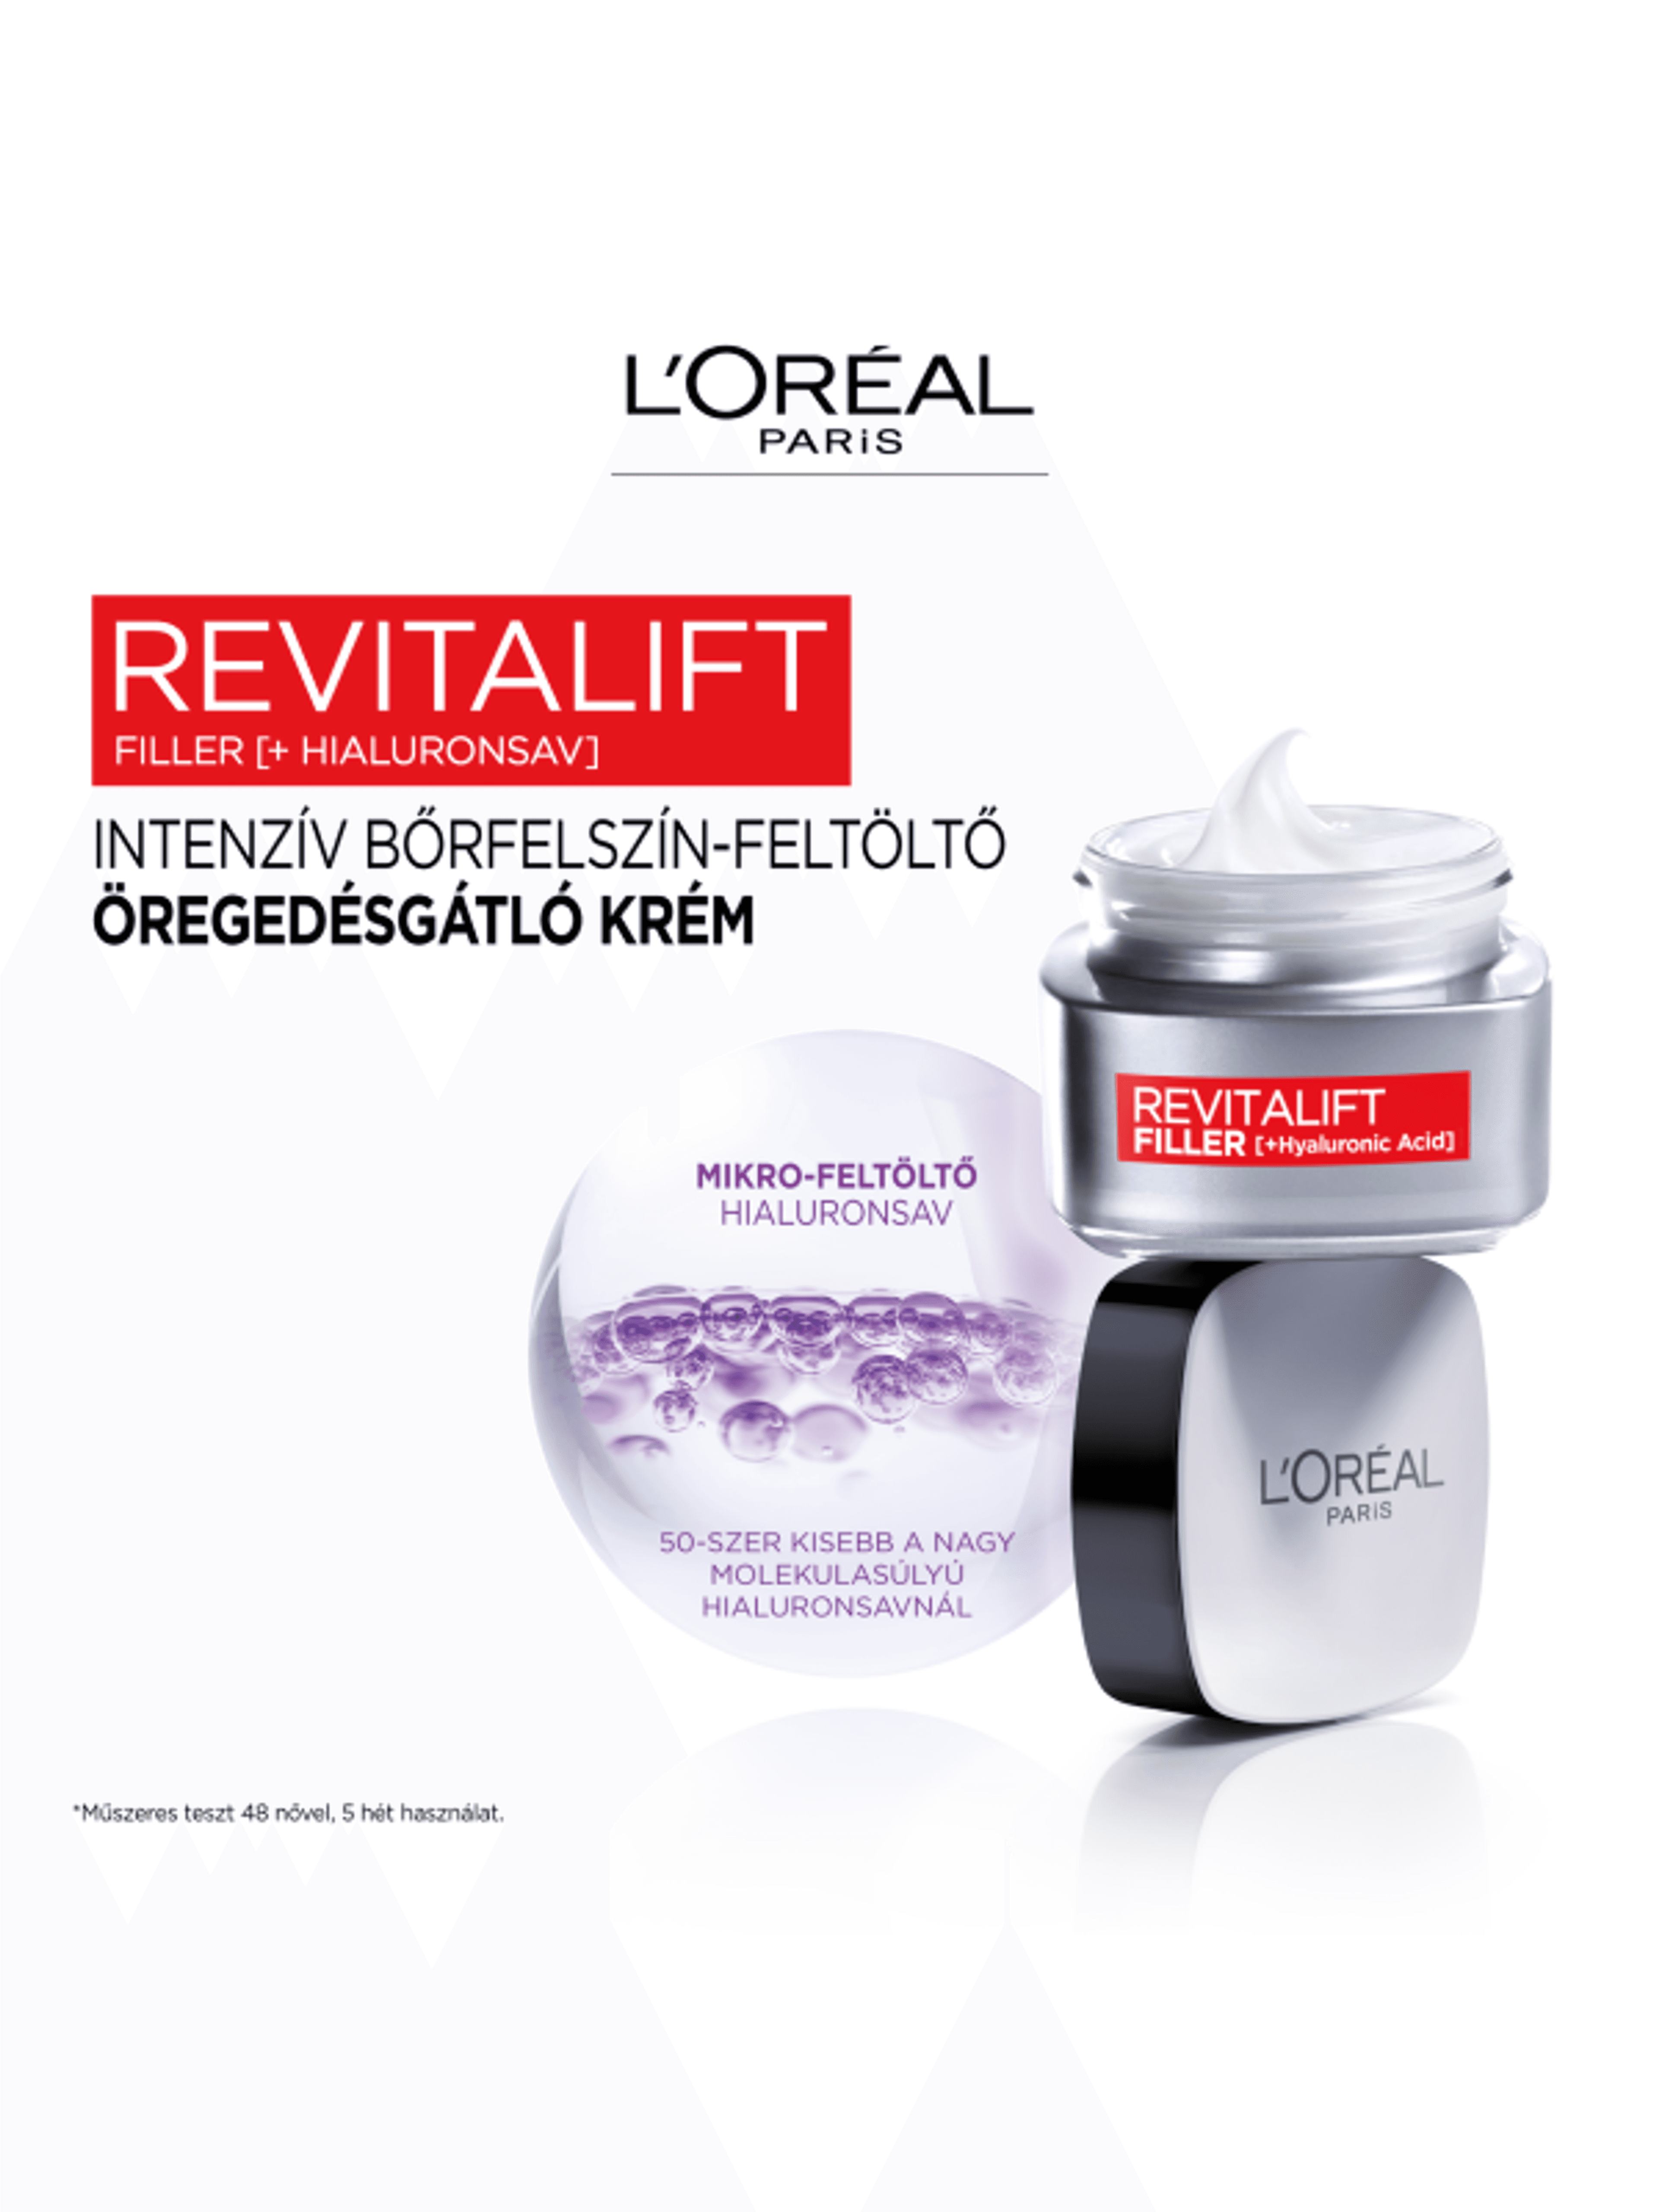 L'Oréal Paris Revitalift Filler ránctalanító,feltöltő nappali krém hialuronsavval 50ml - 1 db-3